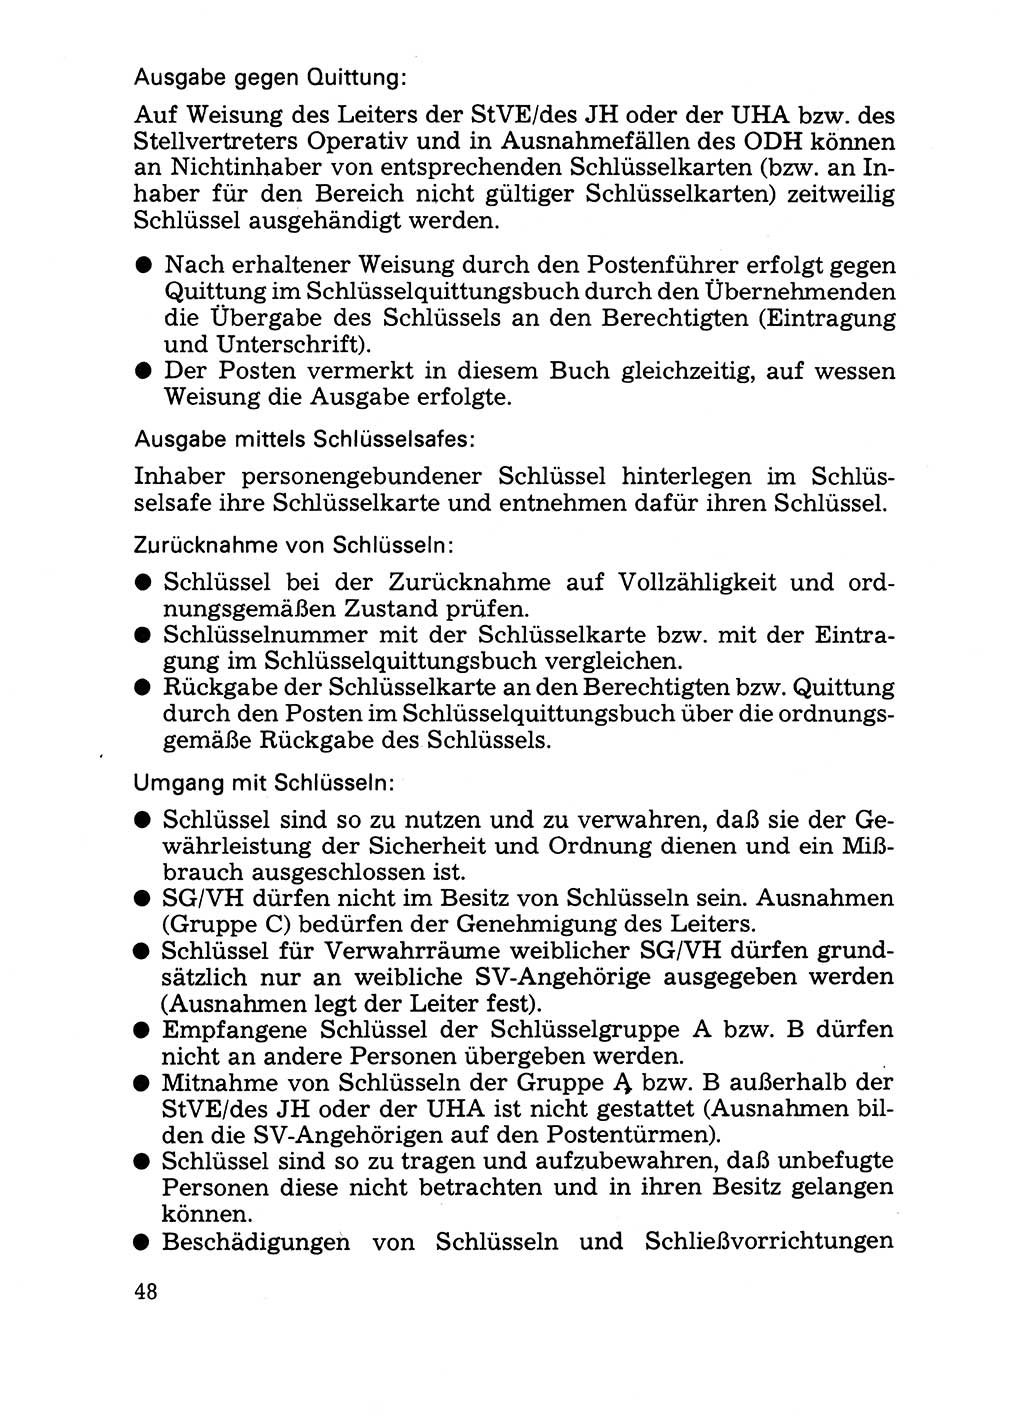 Handbuch für operative Dienste, Abteilung Strafvollzug (SV) [Ministerium des Innern (MdI) Deutsche Demokratische Republik (DDR)] 1981, Seite 48 (Hb. op. D. Abt. SV MdI DDR 1981, S. 48)